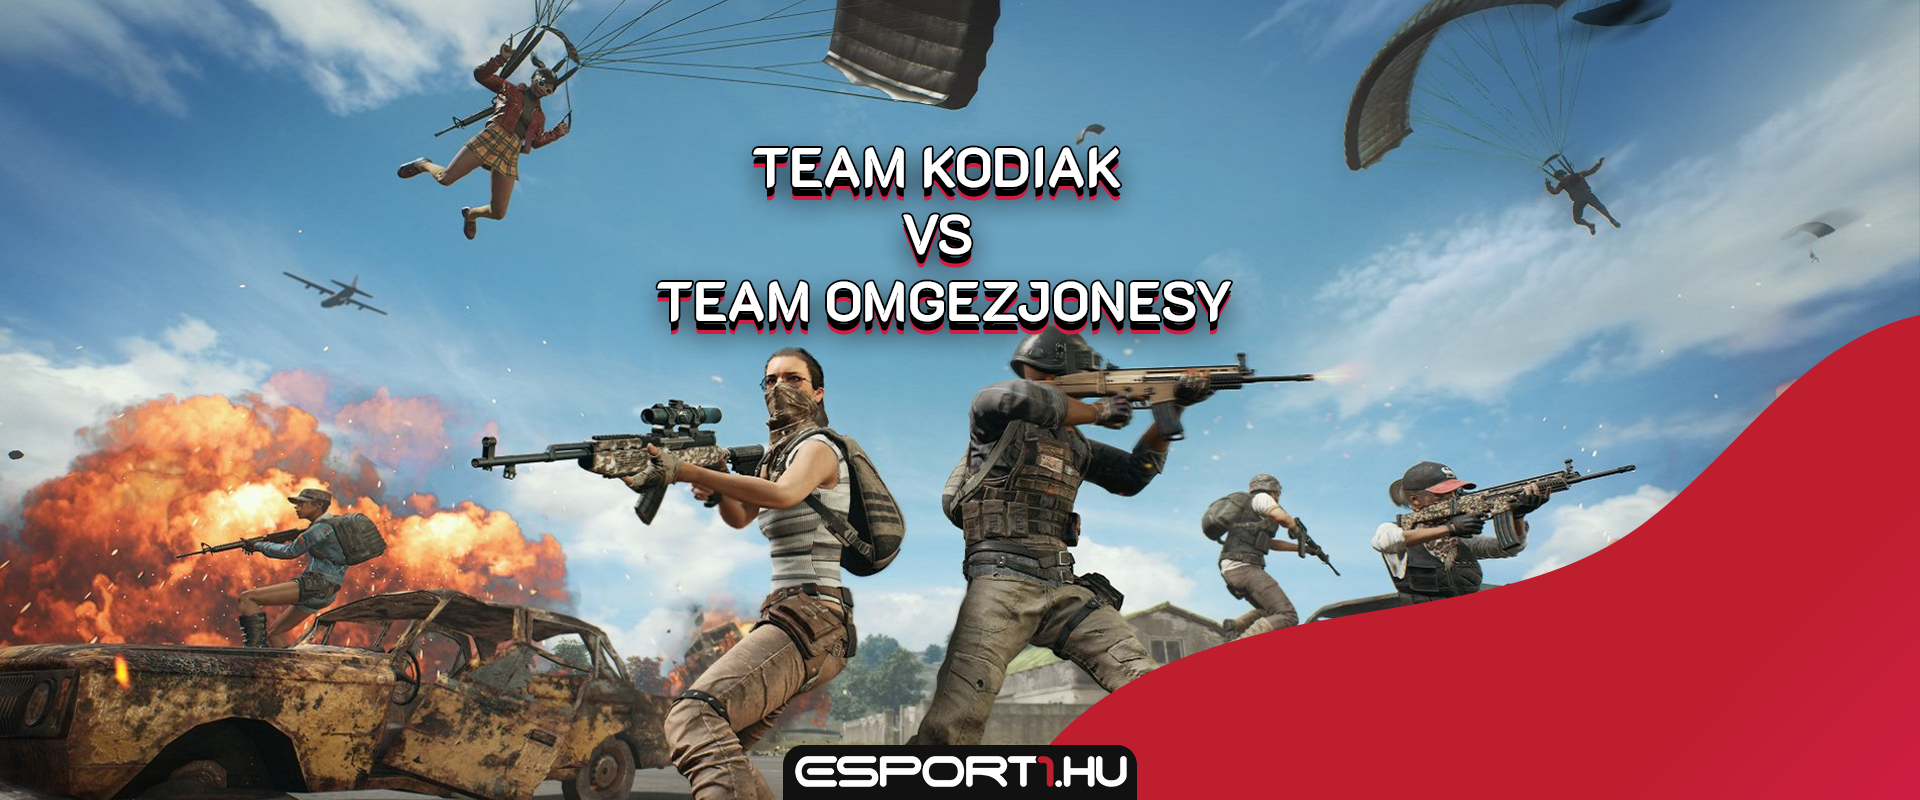 Jövő héten összecsap a Team Kodiak vs Team Omgezjonesy PUBG platoon módban!